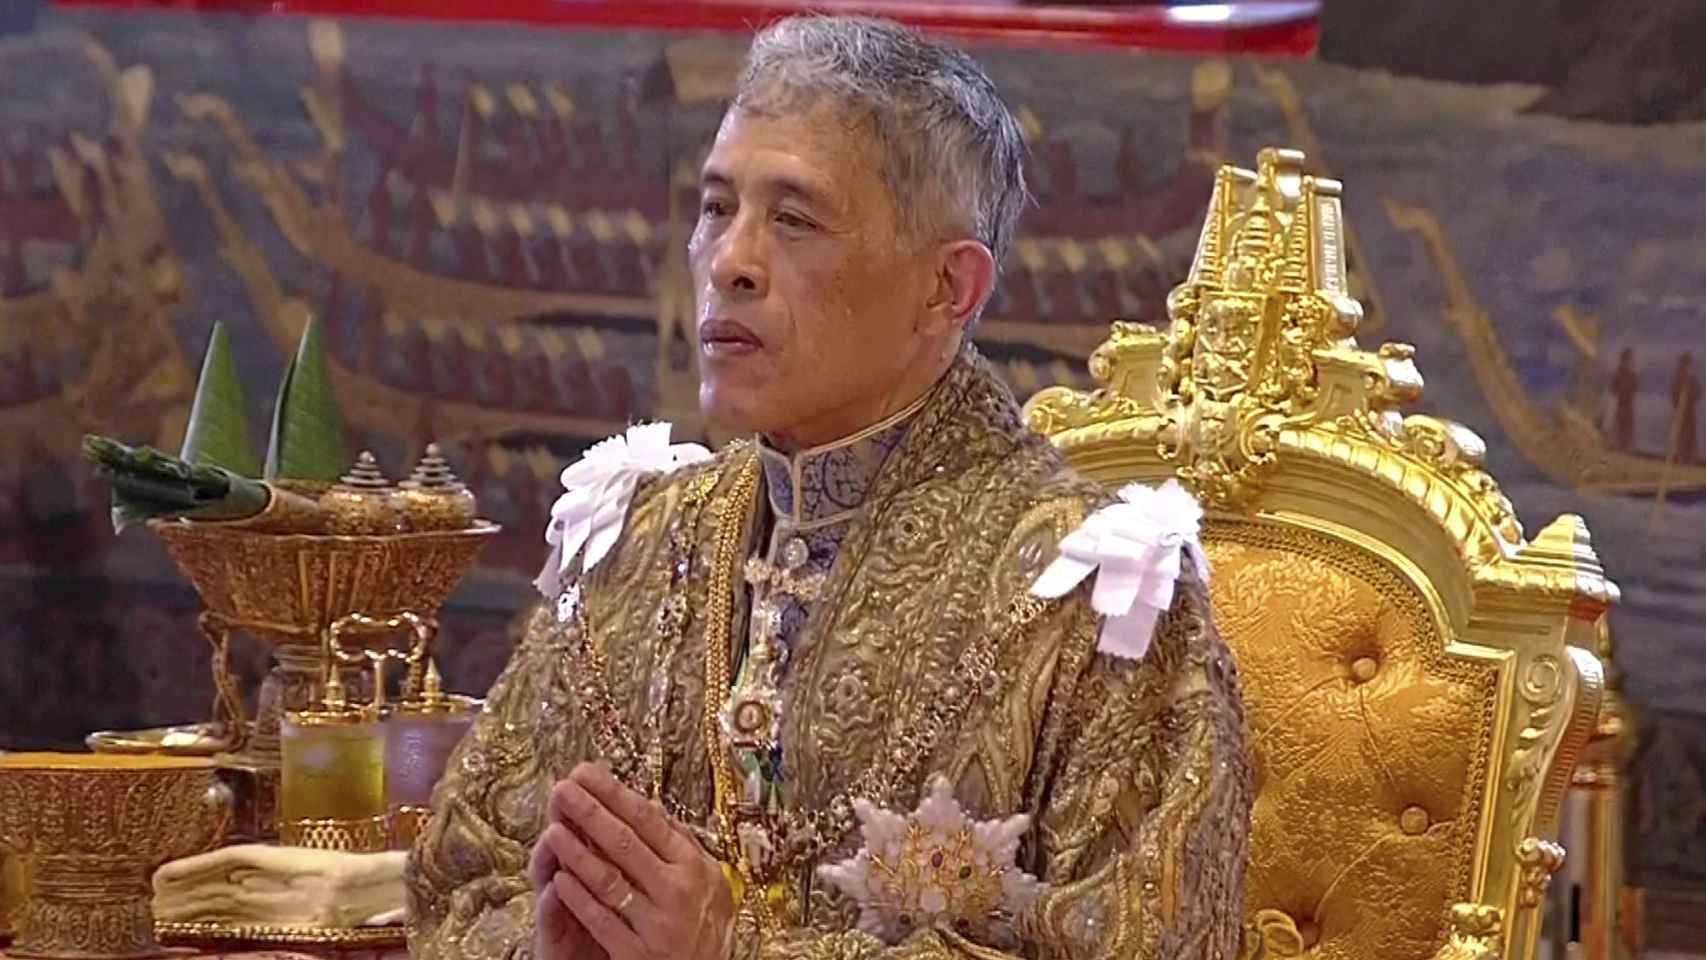 El rey Vajiralongkorn de Tailandia ha sido coronado en una suntuosa ceremonia en el Gran Palacio Real de Bangkok.